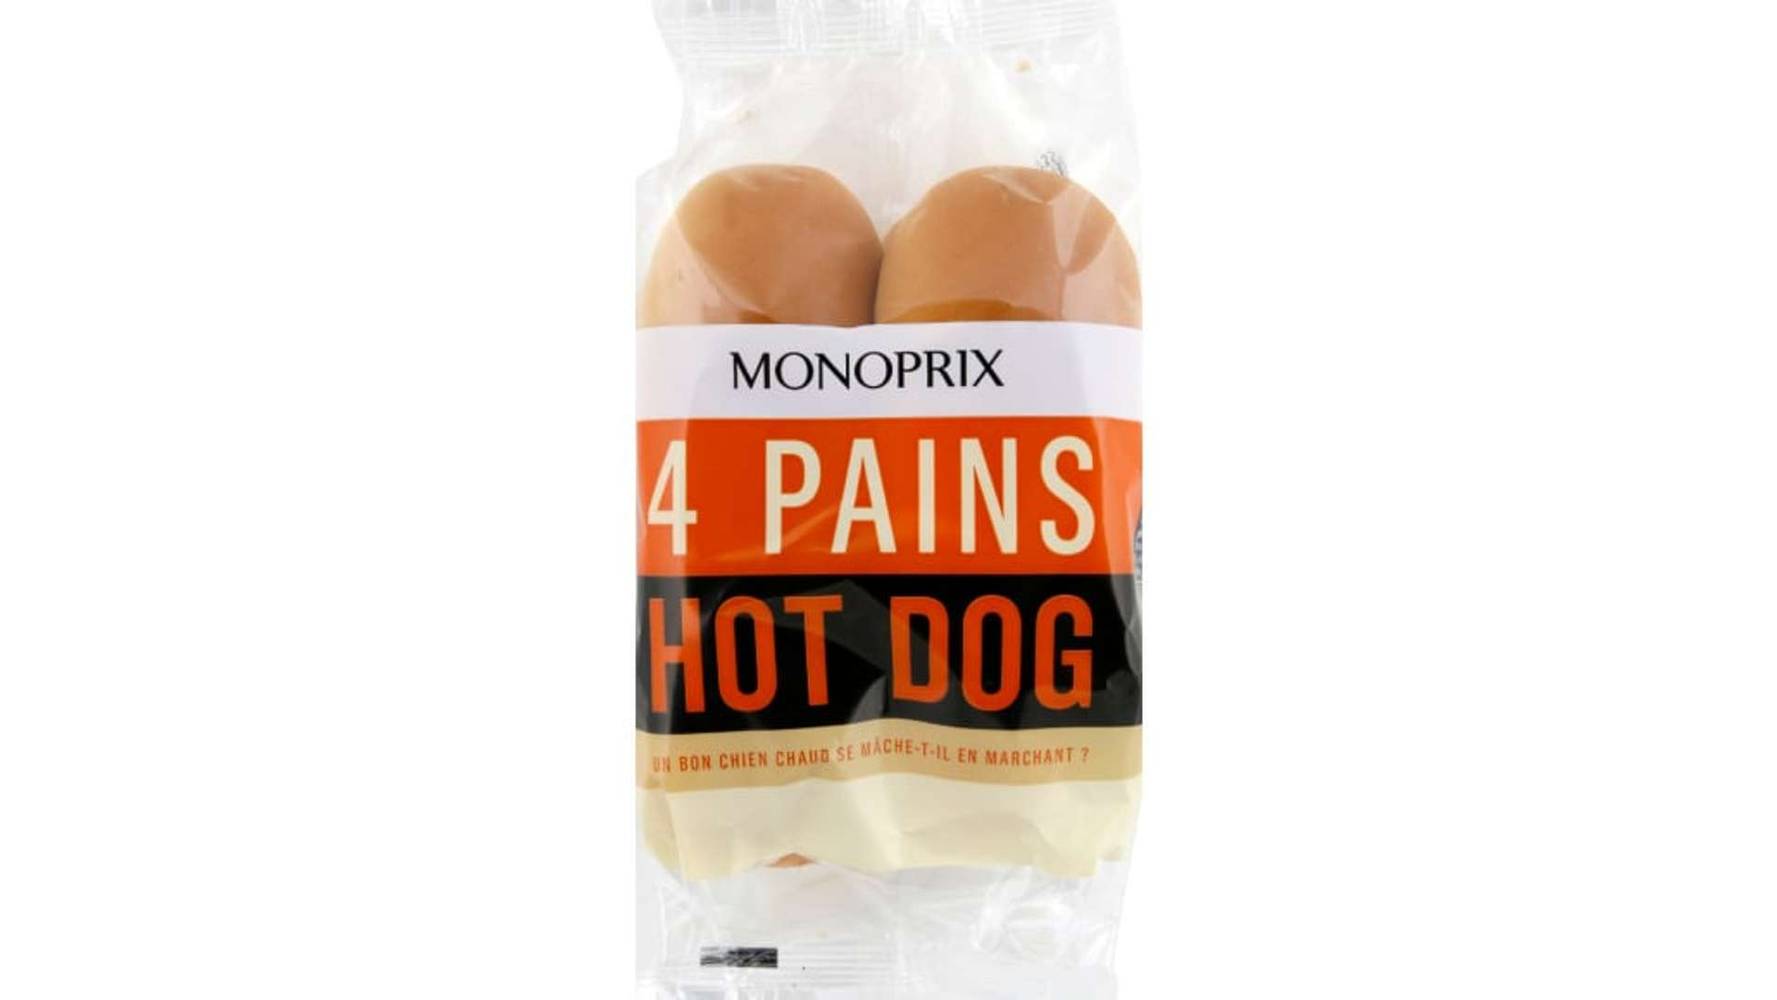 Monoprix Pains Hot Dog Le paquet de 4,250g